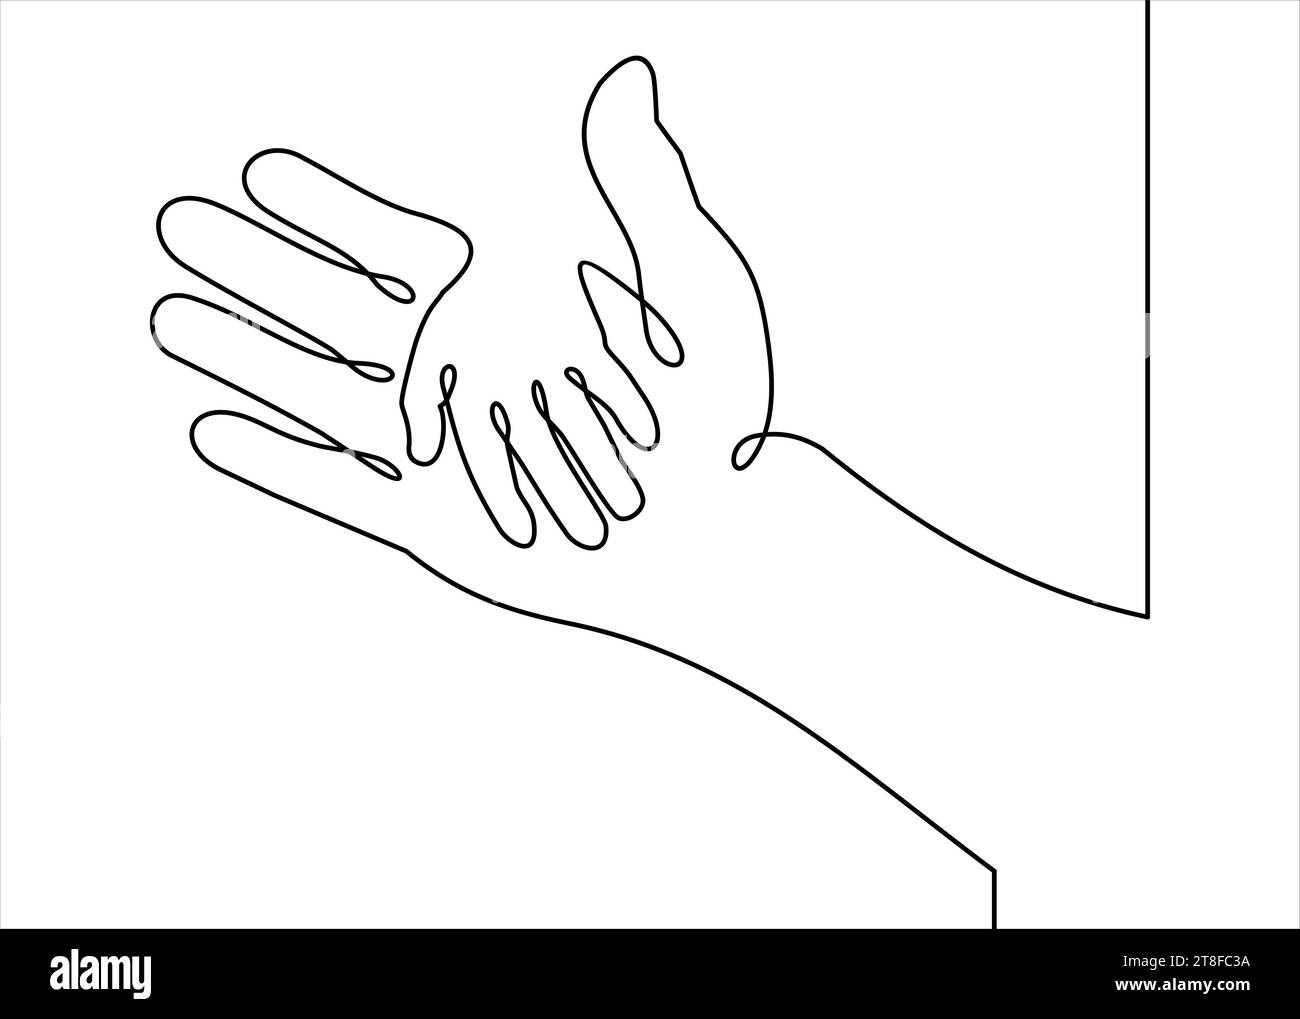 Vektor-Abdeckung zwei Hände, Hilfe und Solidarität - kontinuierliche Linienzeichnung Stock Vektor